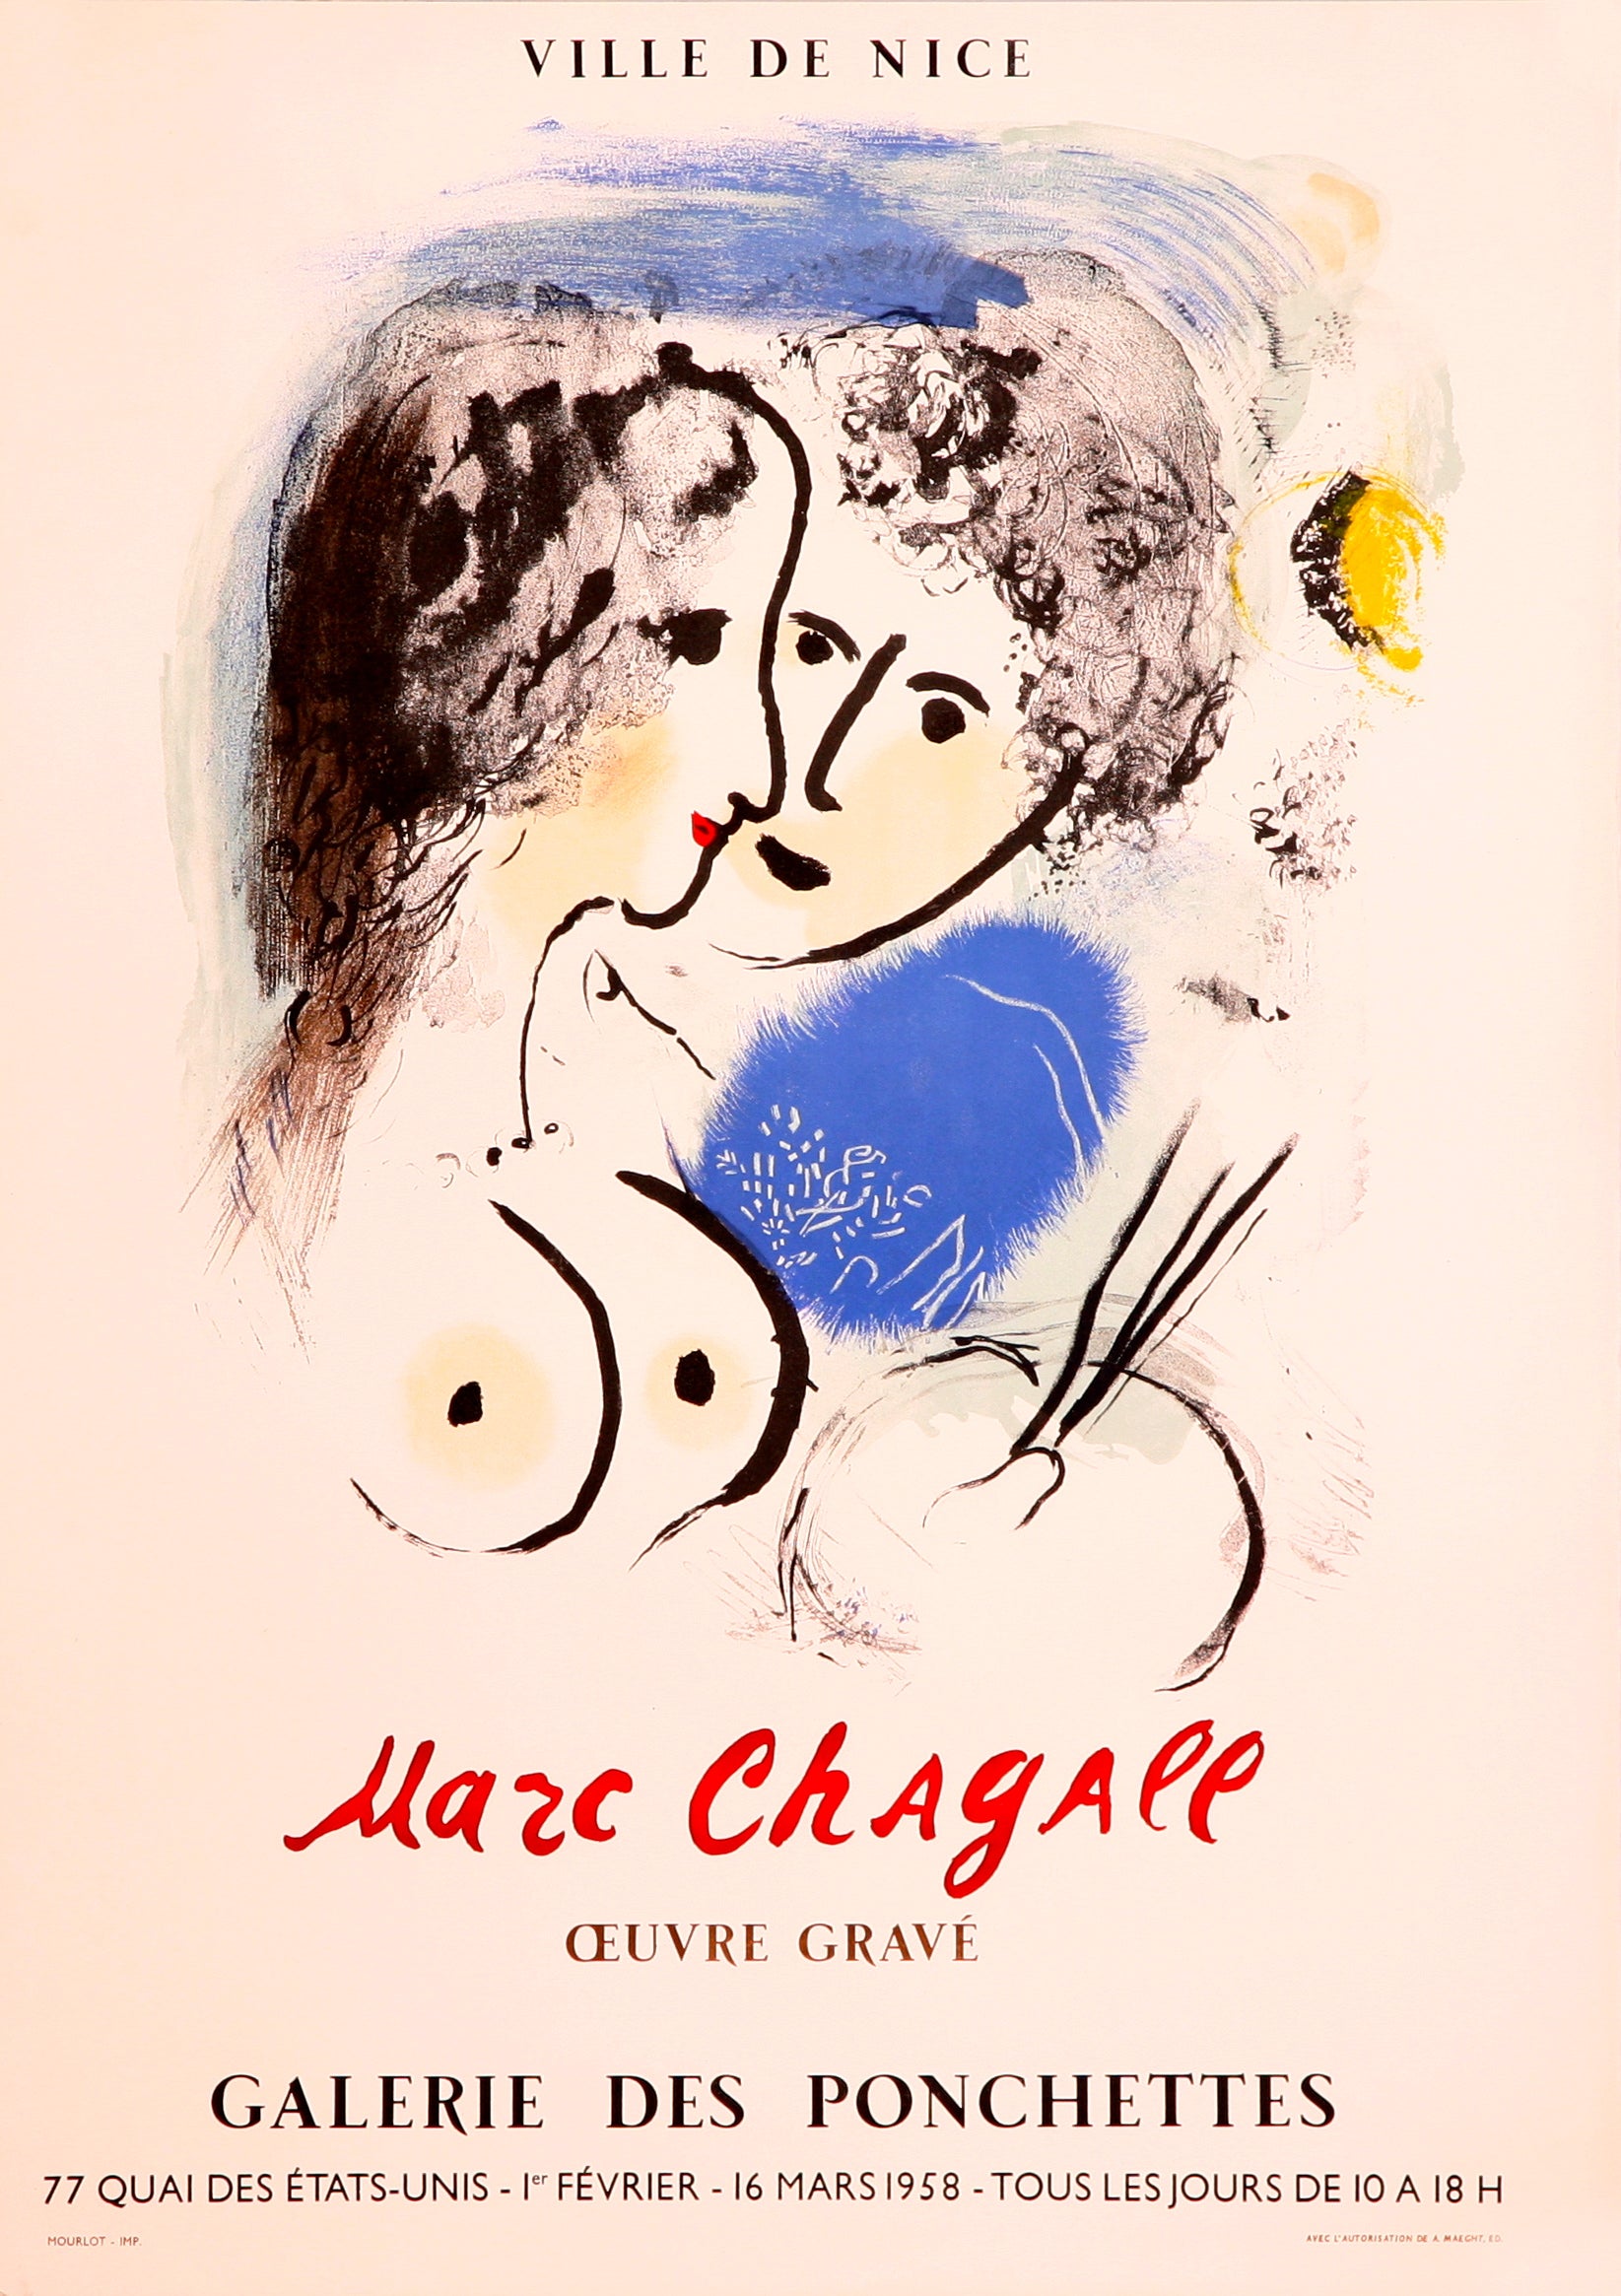 Le Peintre a la Palette - Galerie des Pochettes - Ville de Nice (after) Marc Chagall, 1958 - Mourlot Editions - Fine_Art - Poster - Lithograph - Wall Art - Vintage - Prints - Original